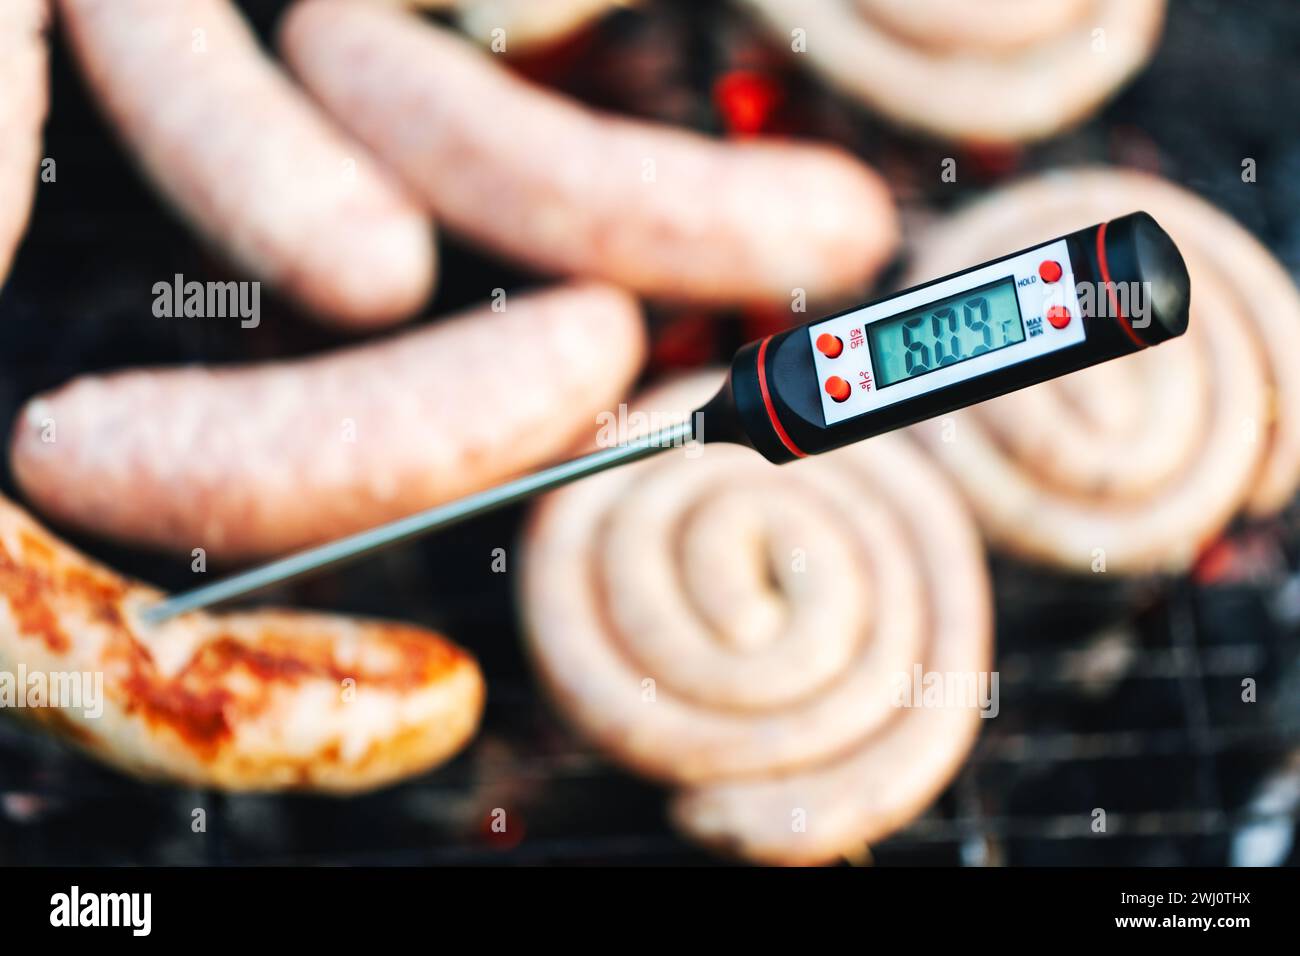 Gros plan d'un thermomètre à viande numérique affichant une température inférieure au seuil de cuisson sécuritaire pour les saucisses grillées - signalant un potentiel de guérison Banque D'Images